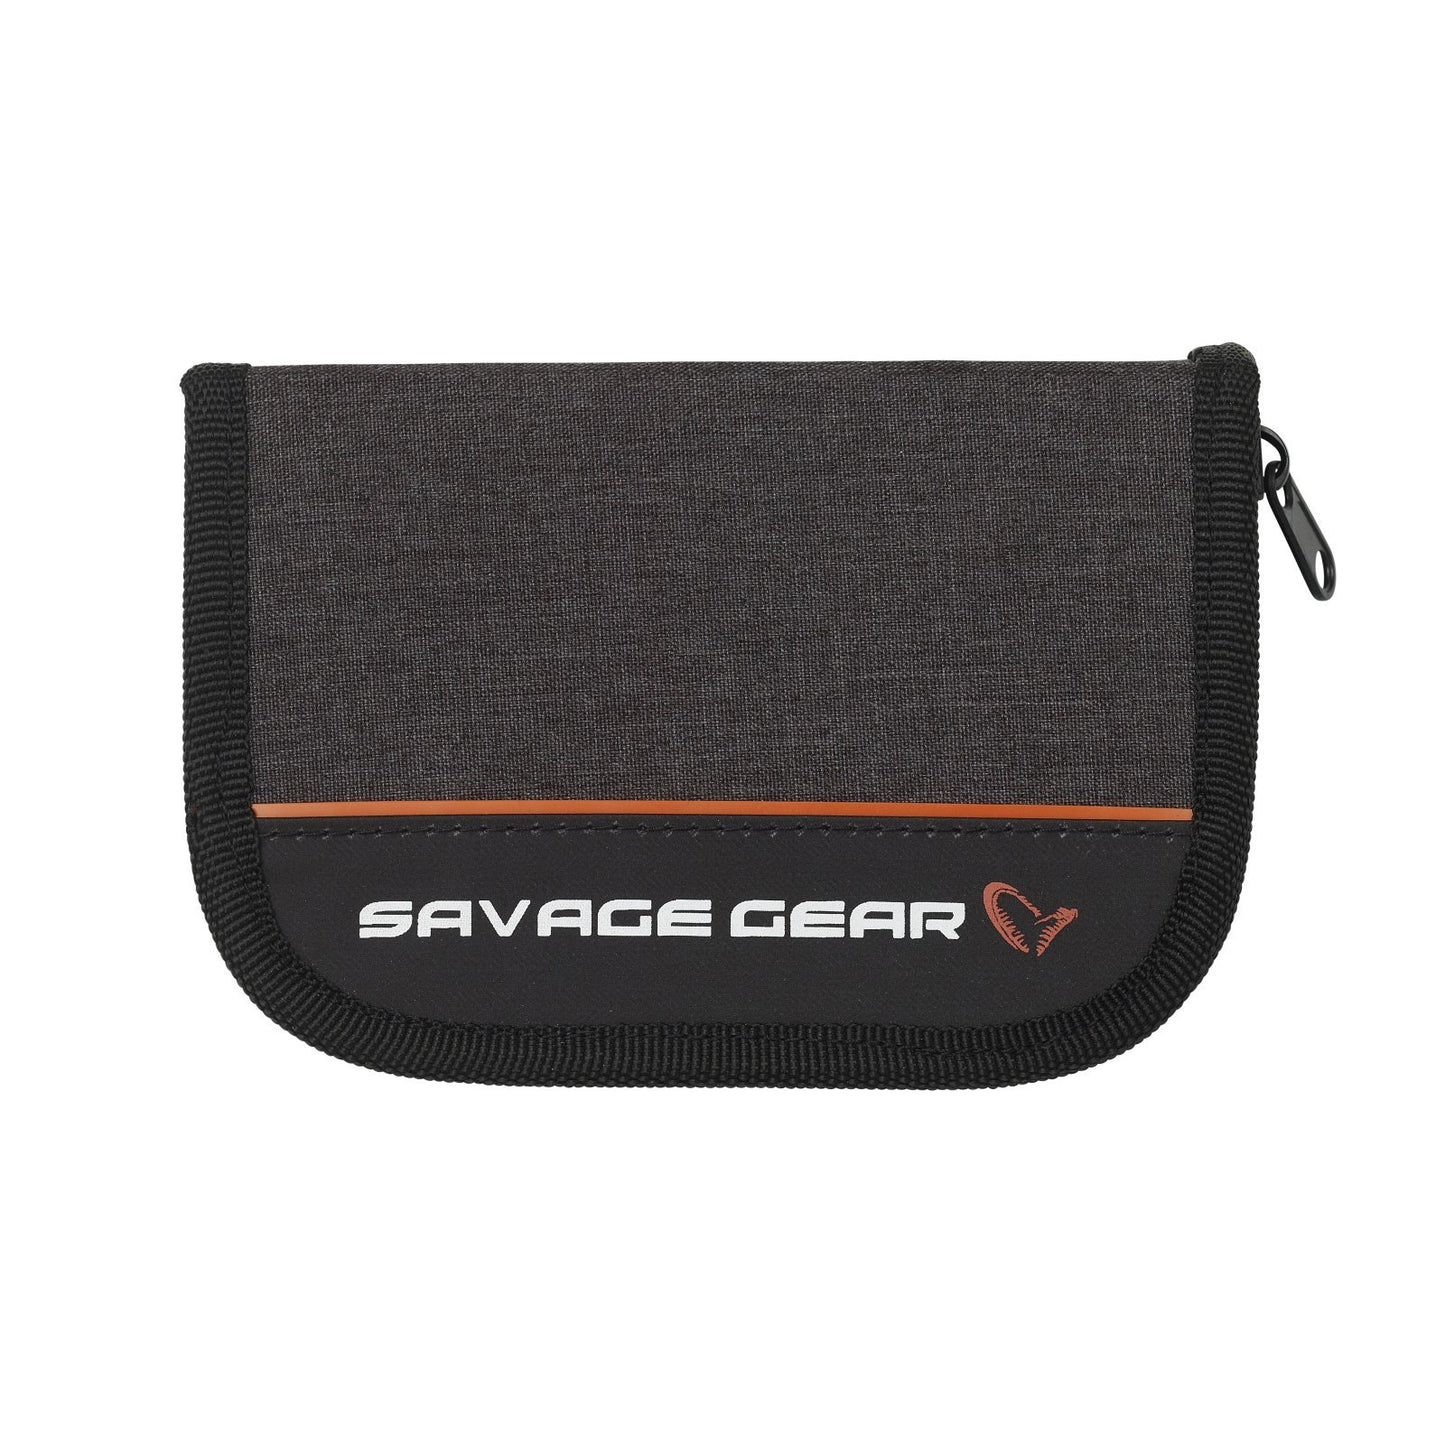 Savage Gear Zipper Wallet1 1